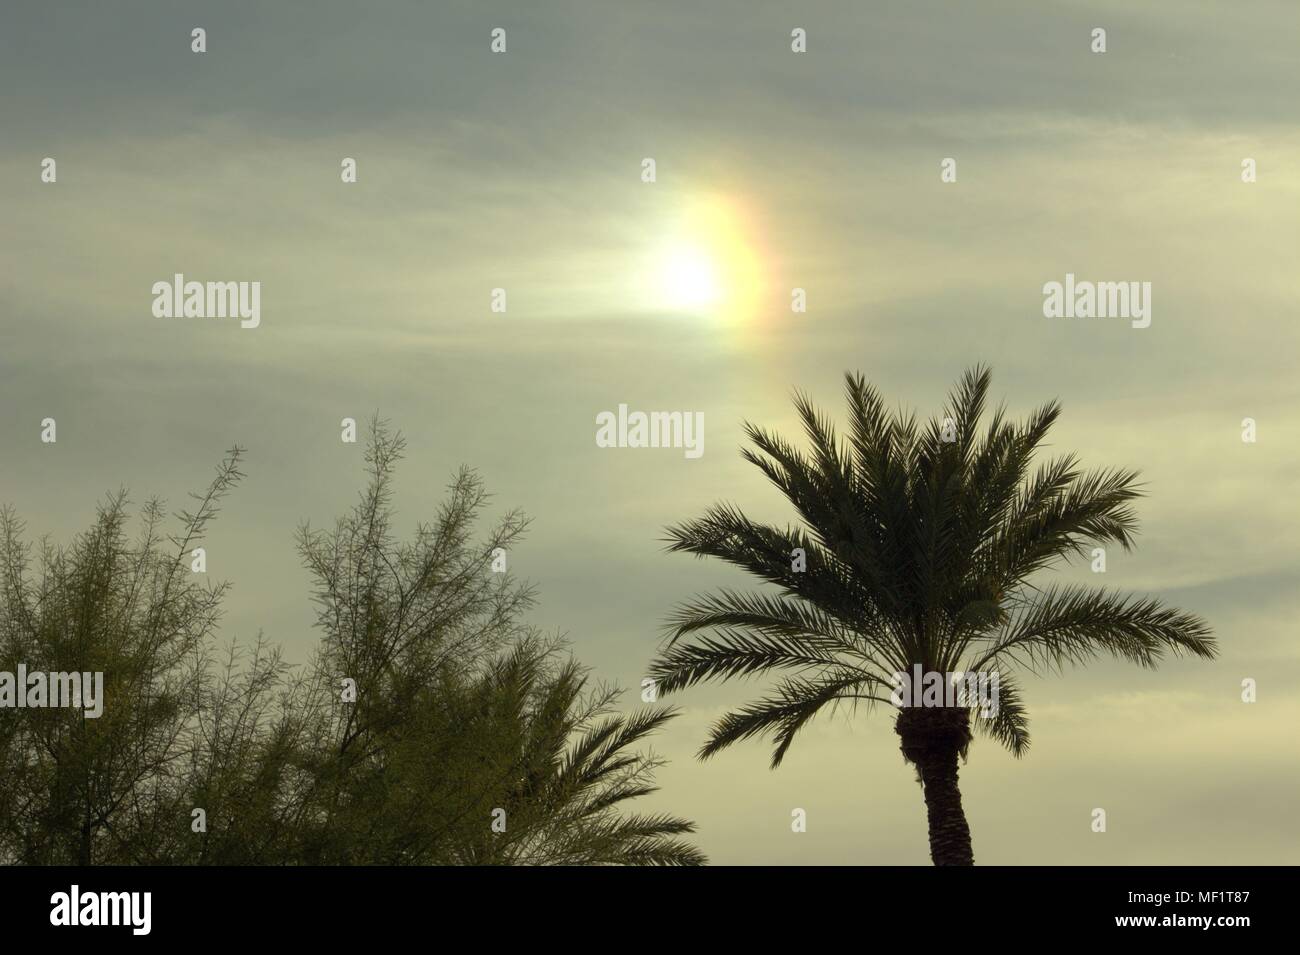 A Sun Dog Above A Palm Tree In Mesa, Arizona Stock Photo